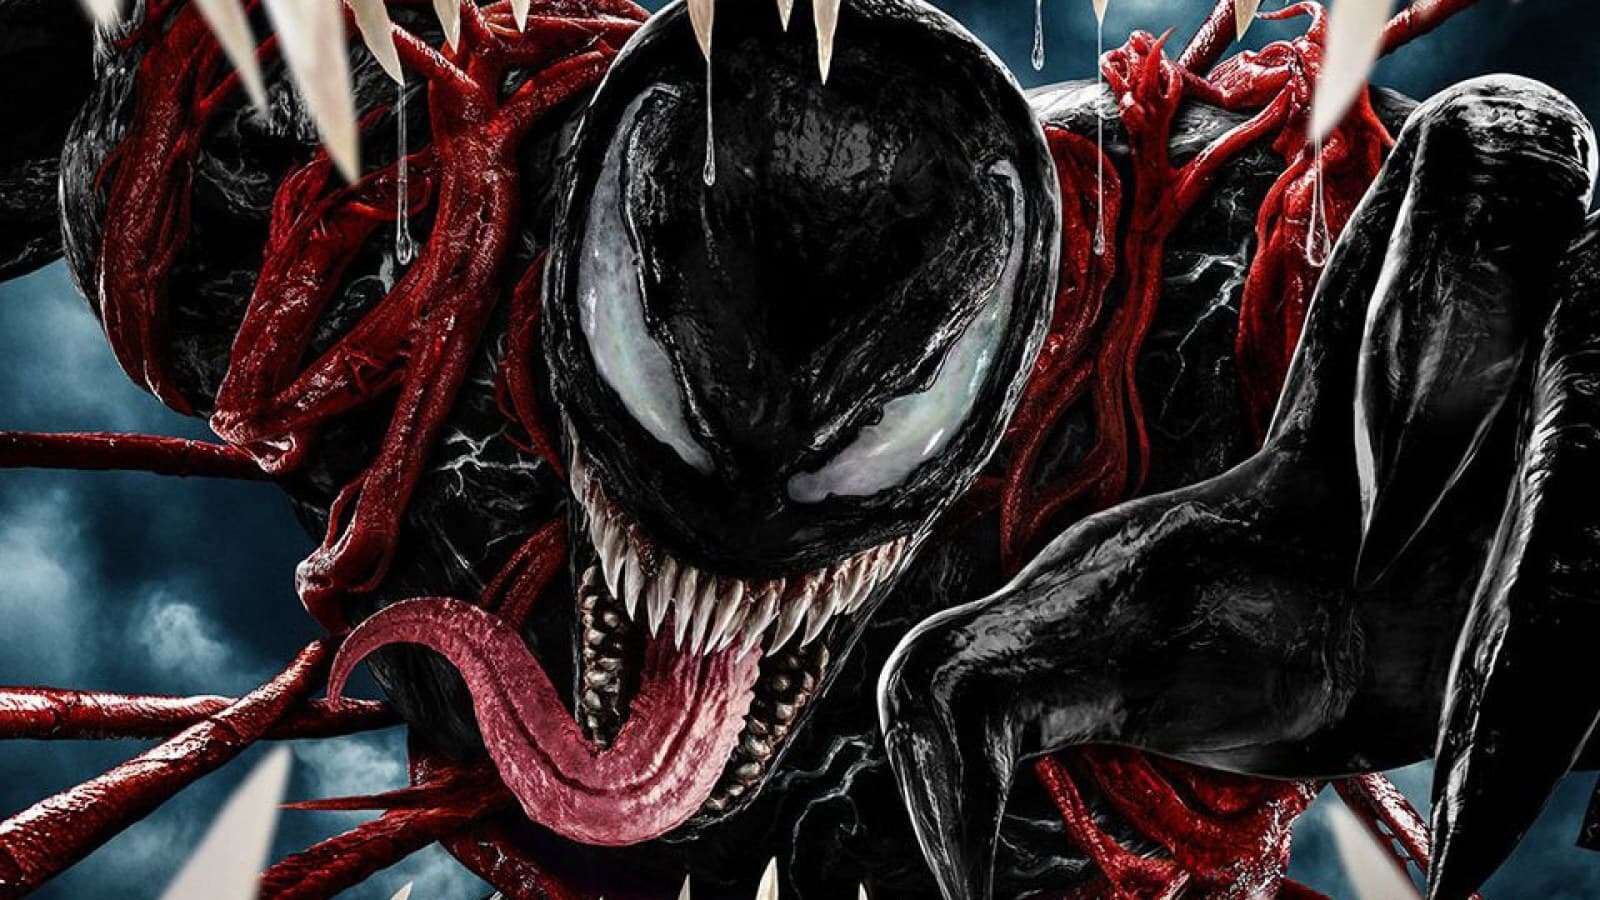 พิษ2 Venom 2 ออนไลน์โดยสมบูรณ์ในปี 2021